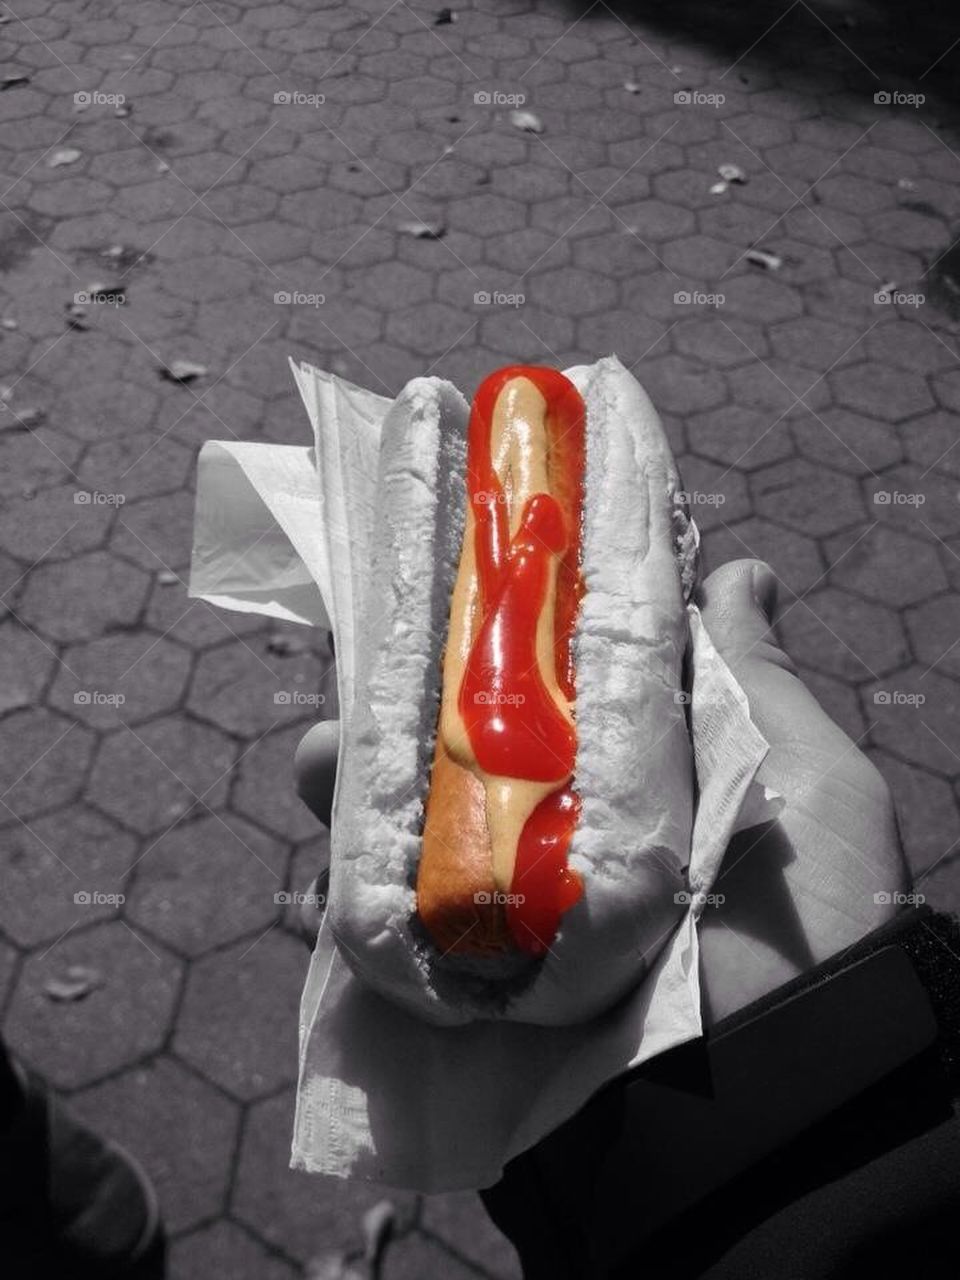 NY hot dog